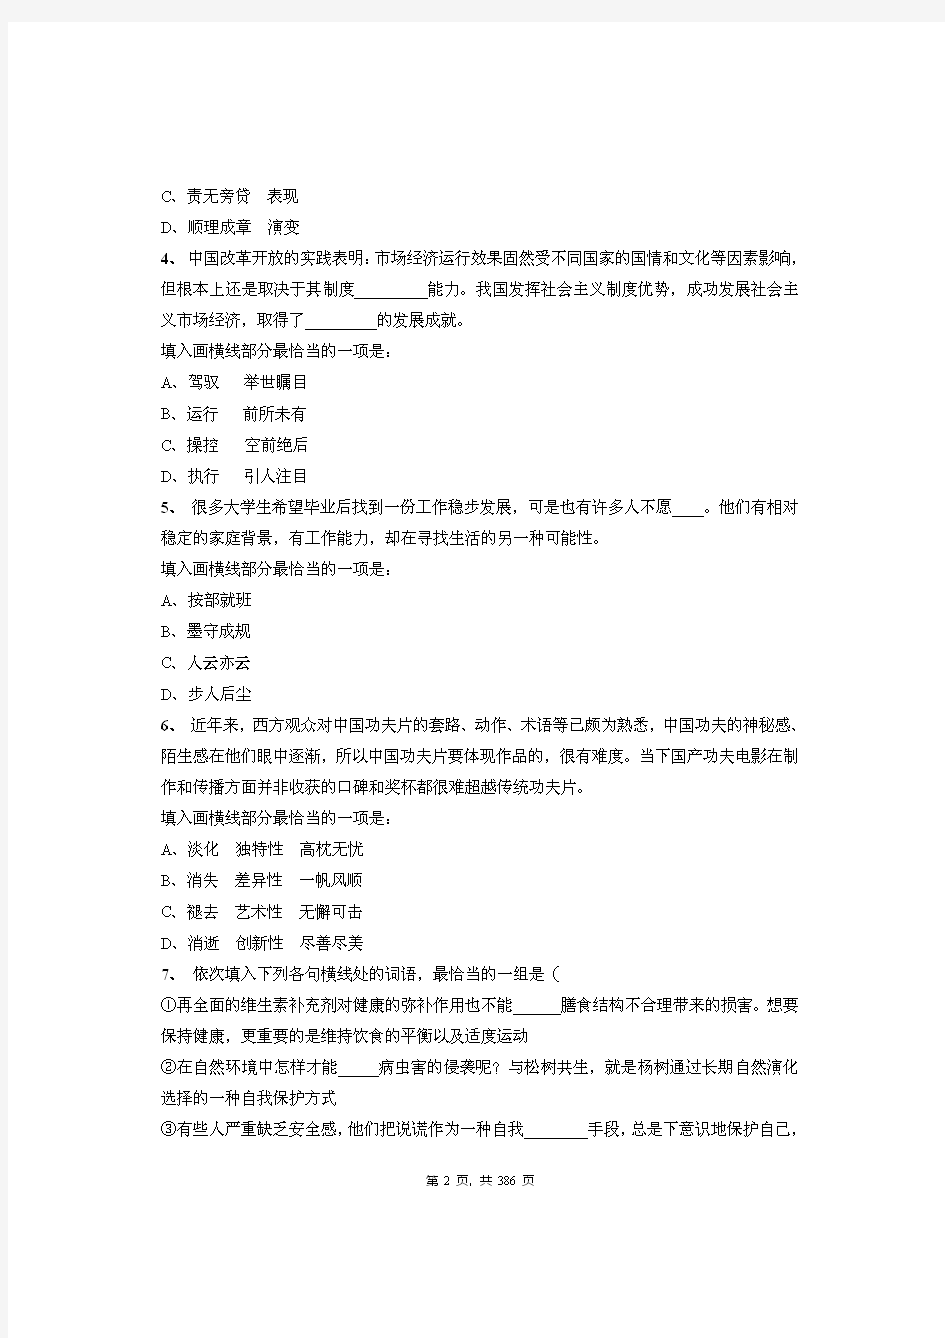 2020年安徽省安庆太湖县事业单位招聘考试《公共基础知识》绝密真题库及答案解析(下)